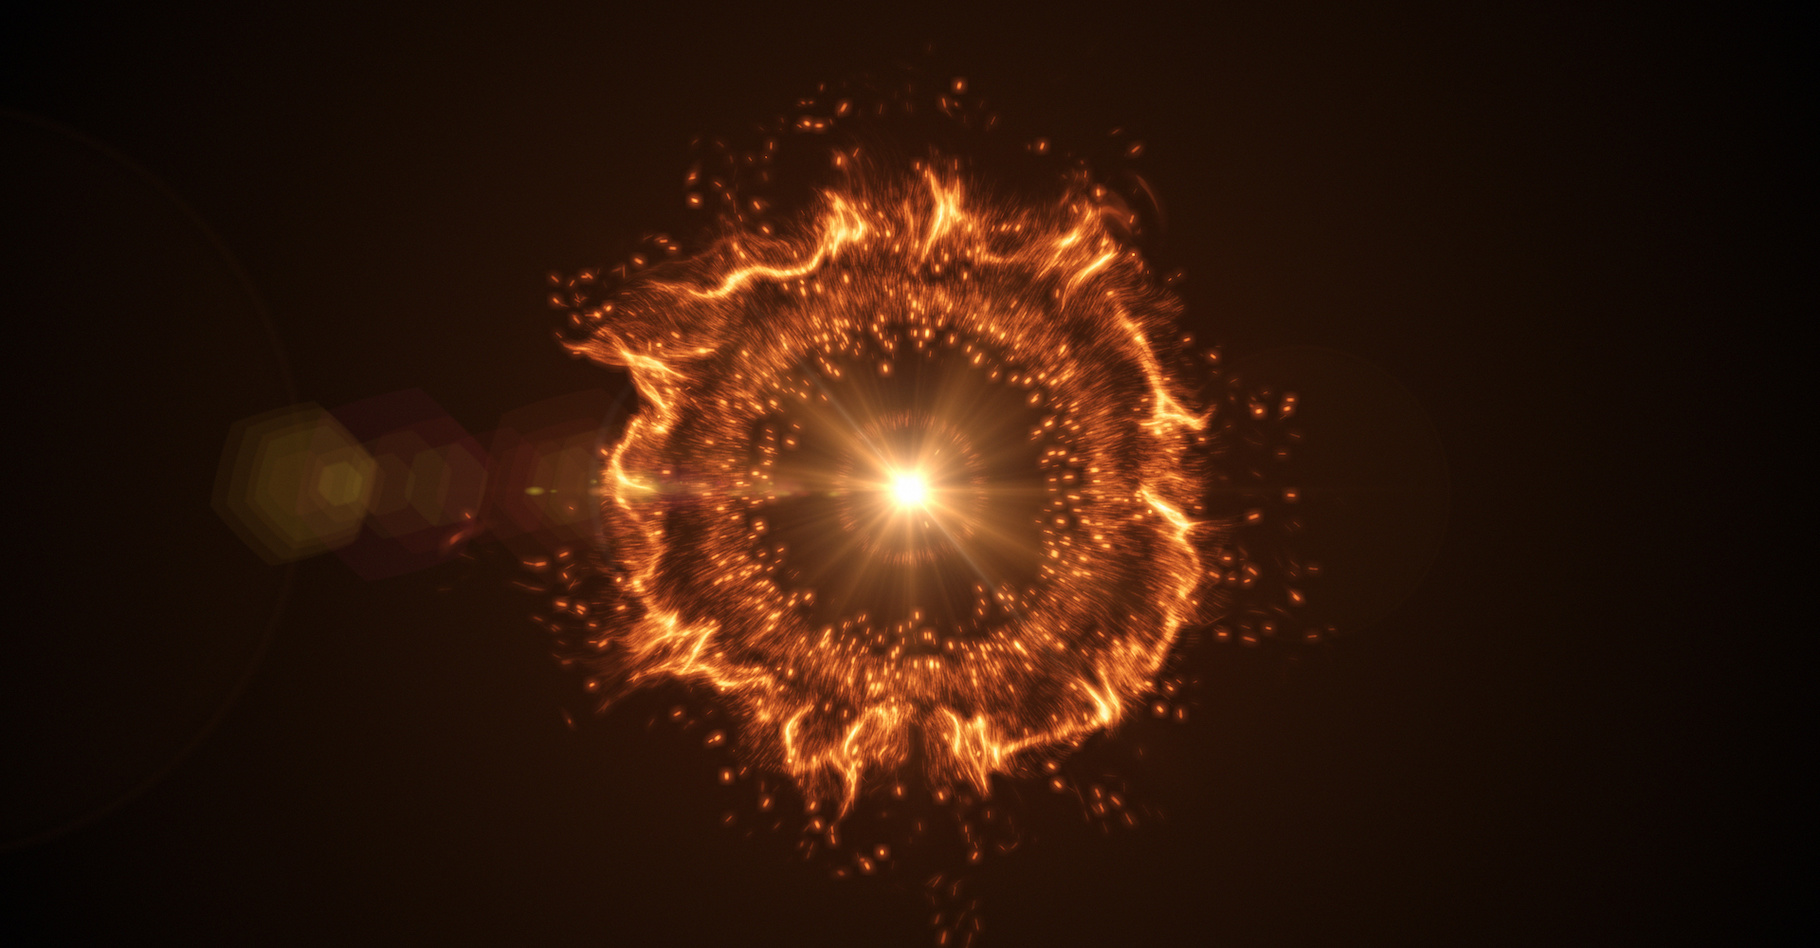 L’explosion d’une étoile en supernova a de quoi attirer l’attention. Cela pourrait donc être l’occasion rêvée pour une civilisation extraterrestre de nous signaler sa présence. © Quardia Inc., Adobe Stock